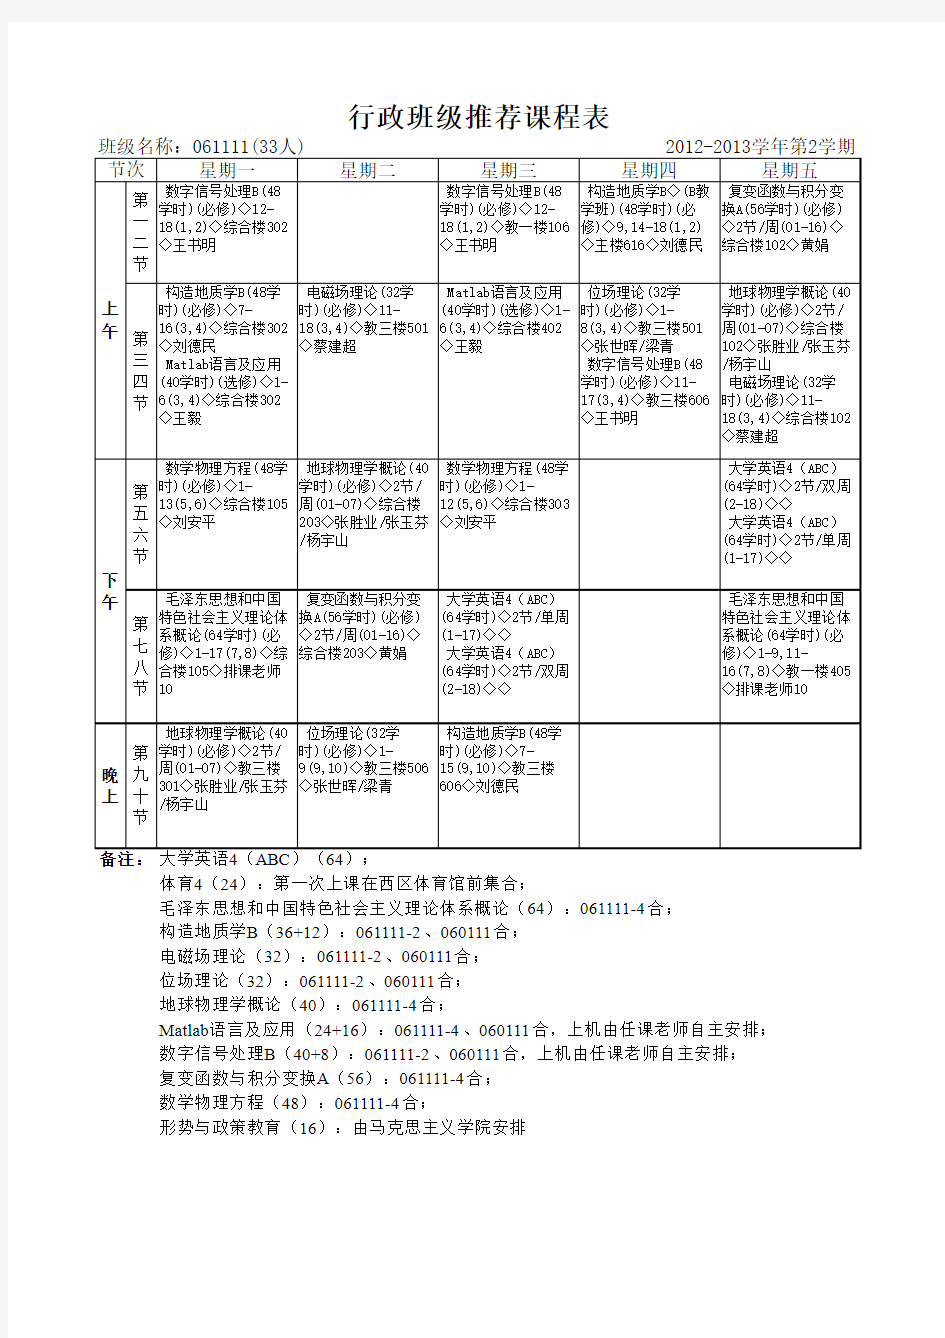 中国地质大学 地空学院2011级行政班推荐课表